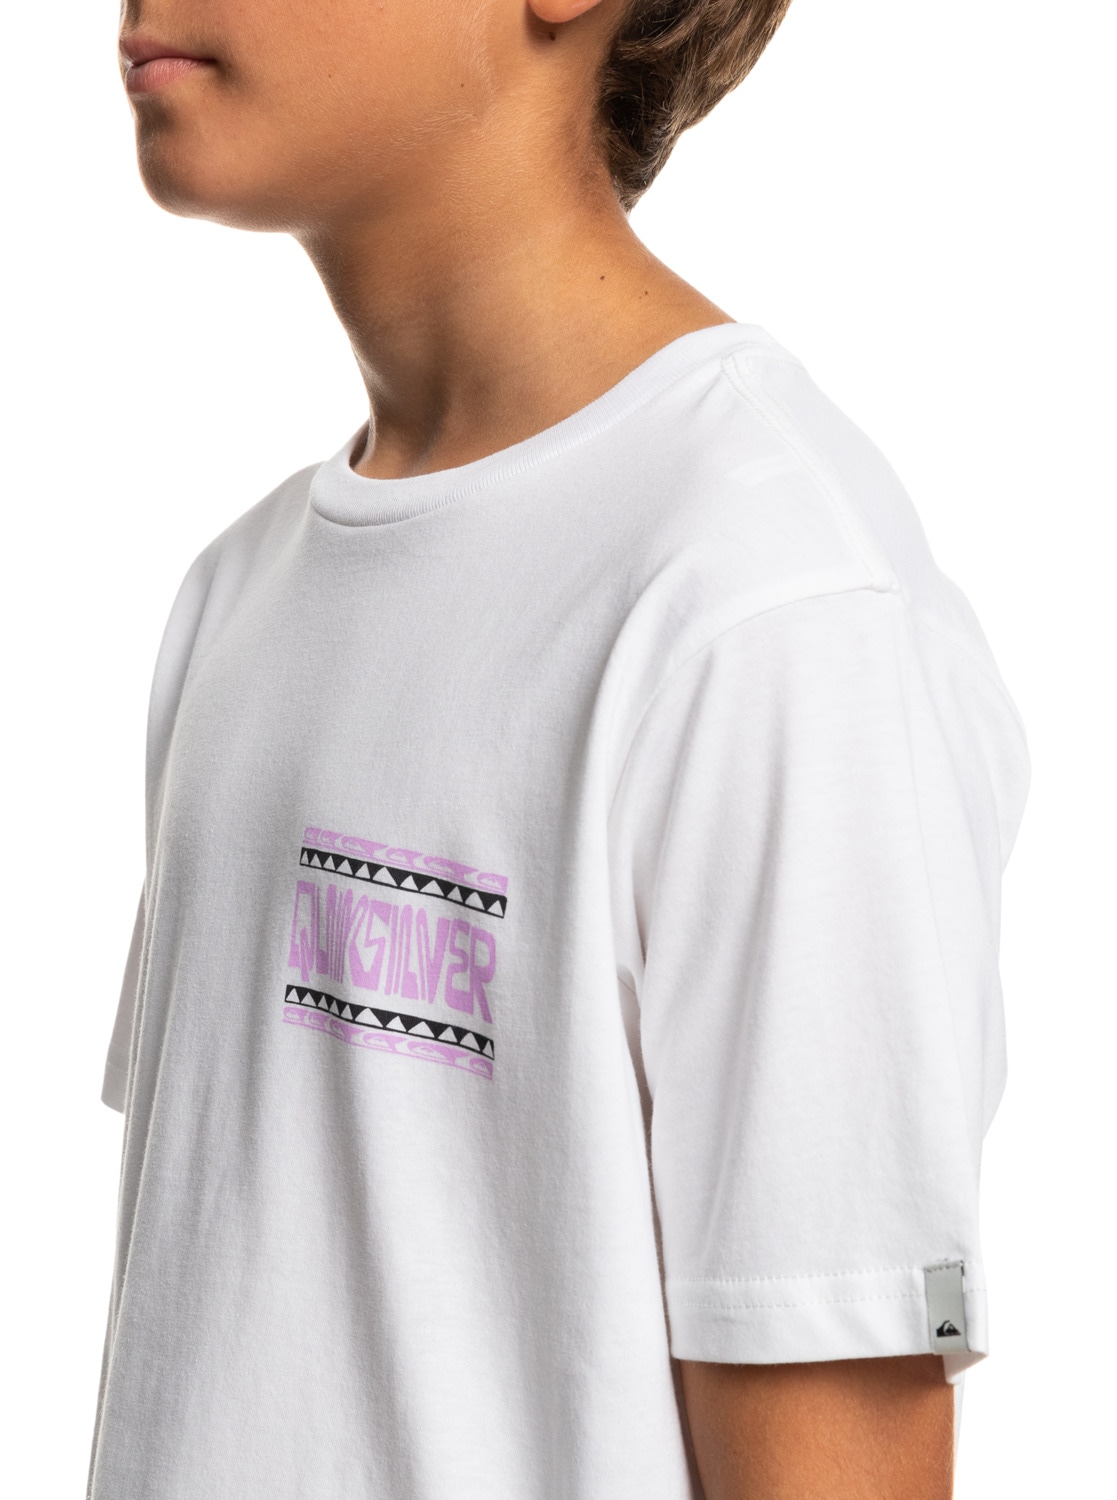 Quiksilver Frames« T-Shirt bei »Warped